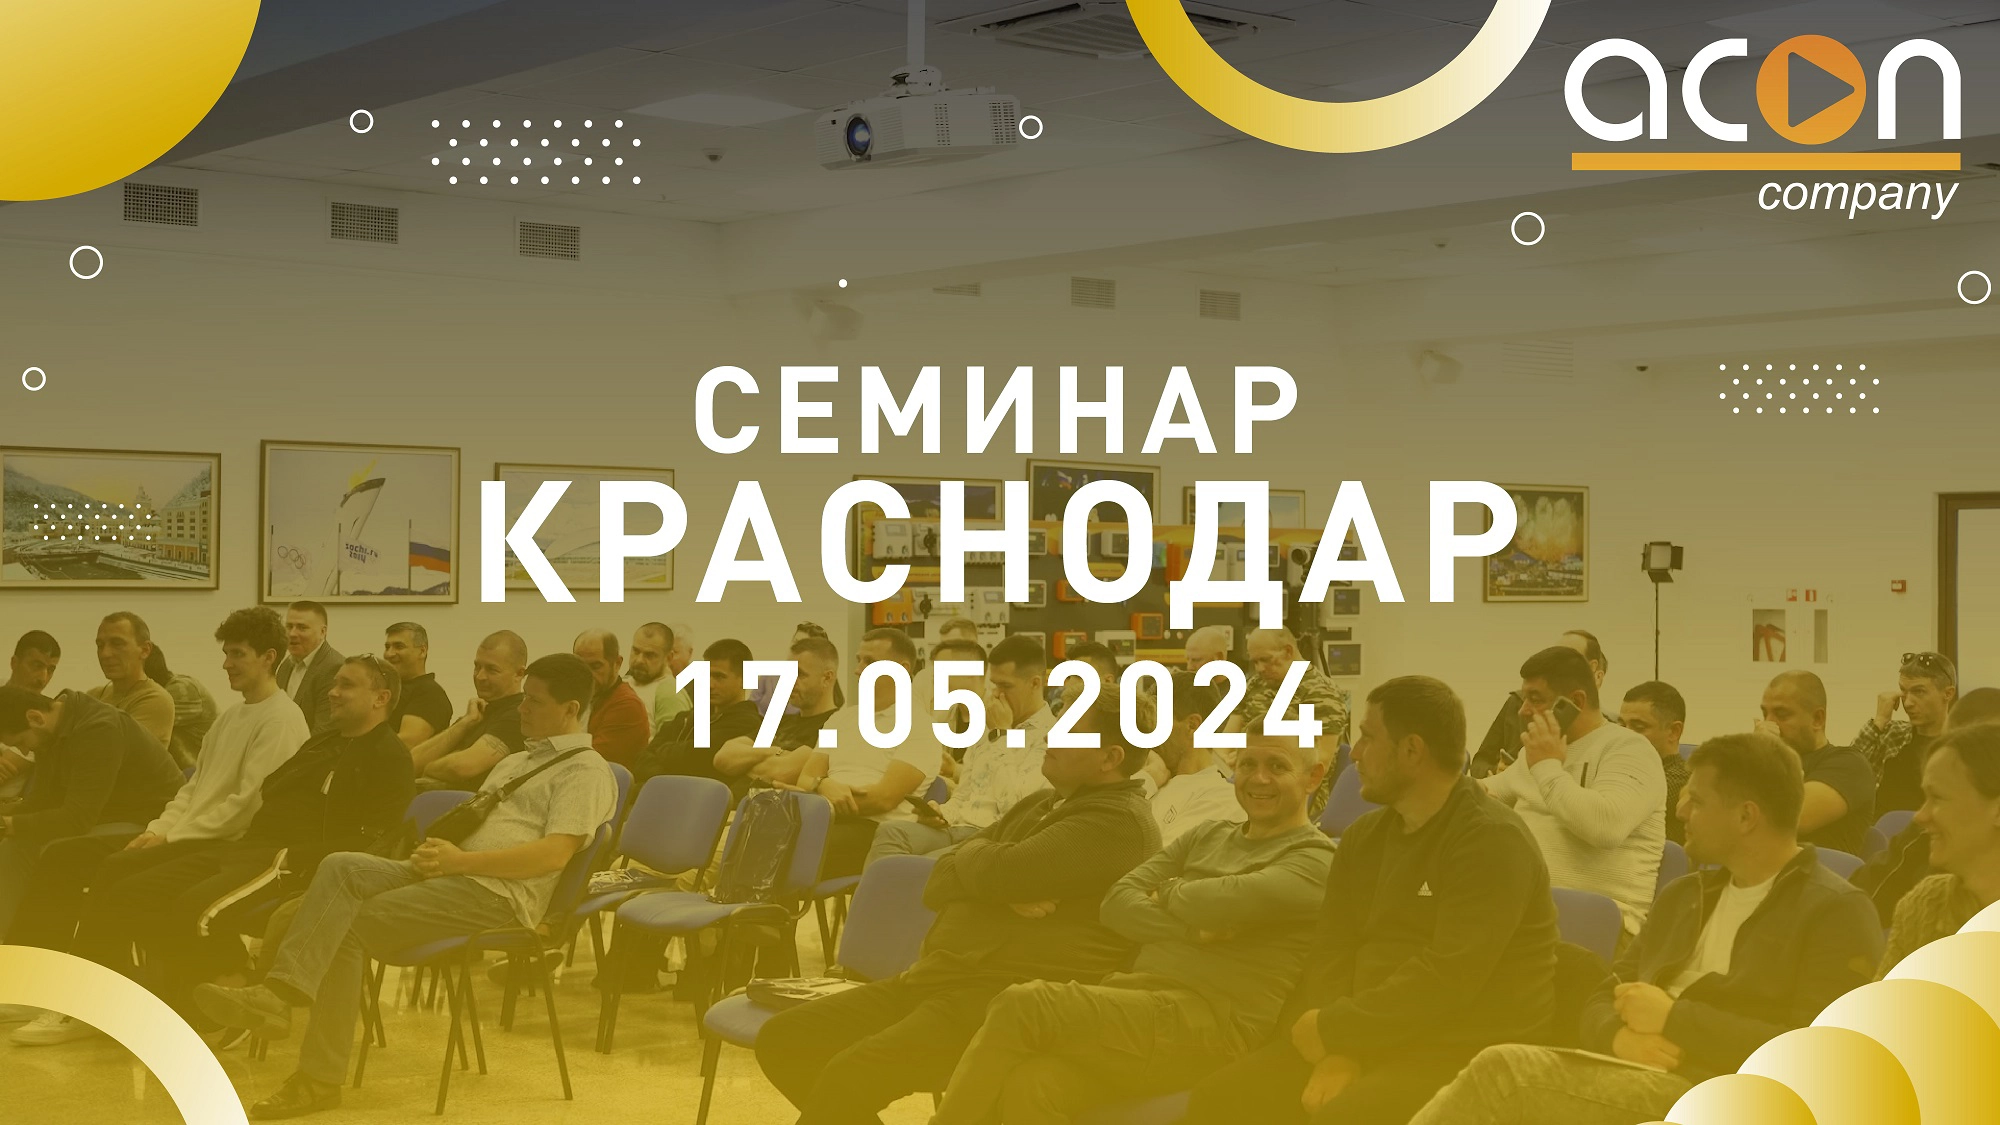 В честь открытия офиса продаж и склада ACON прошел семинар в городе Краснодар